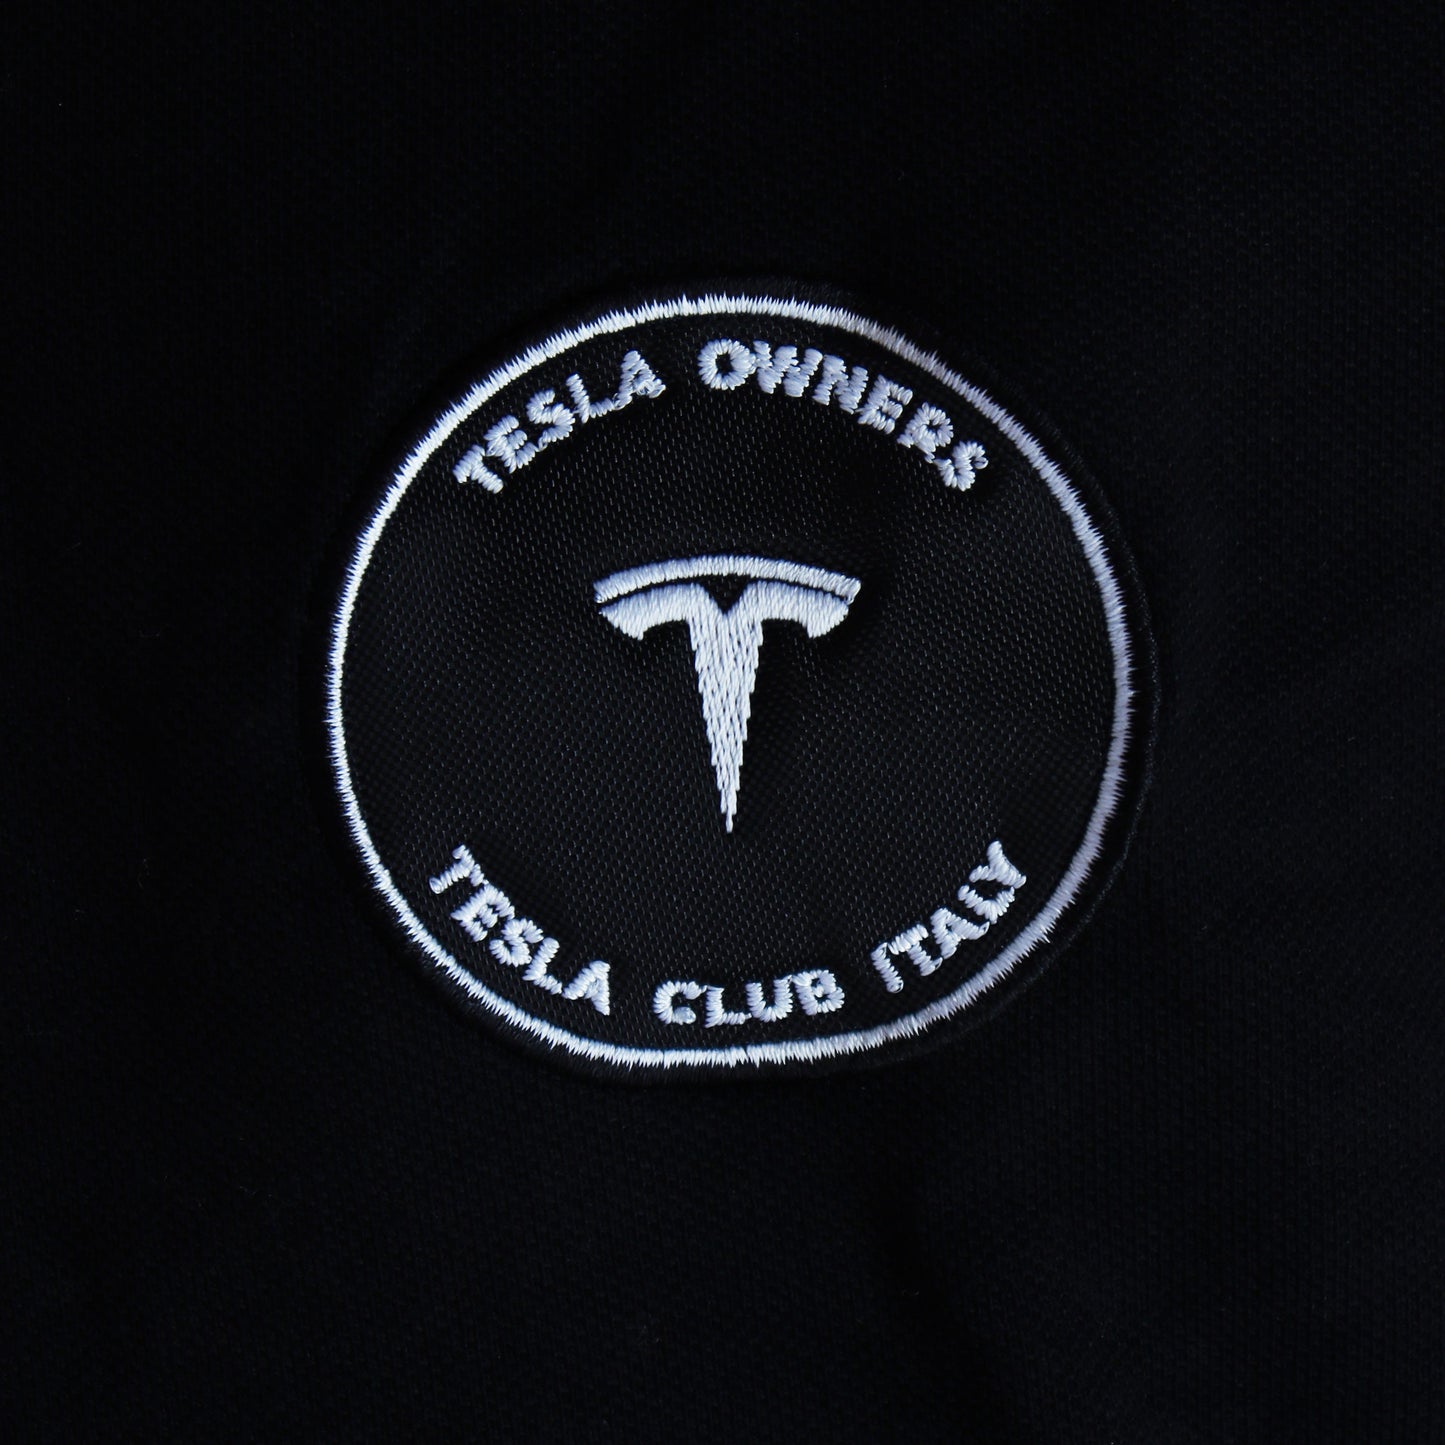 Polo bambino/bambina (unisex) Tesla Club Italy, colore nero